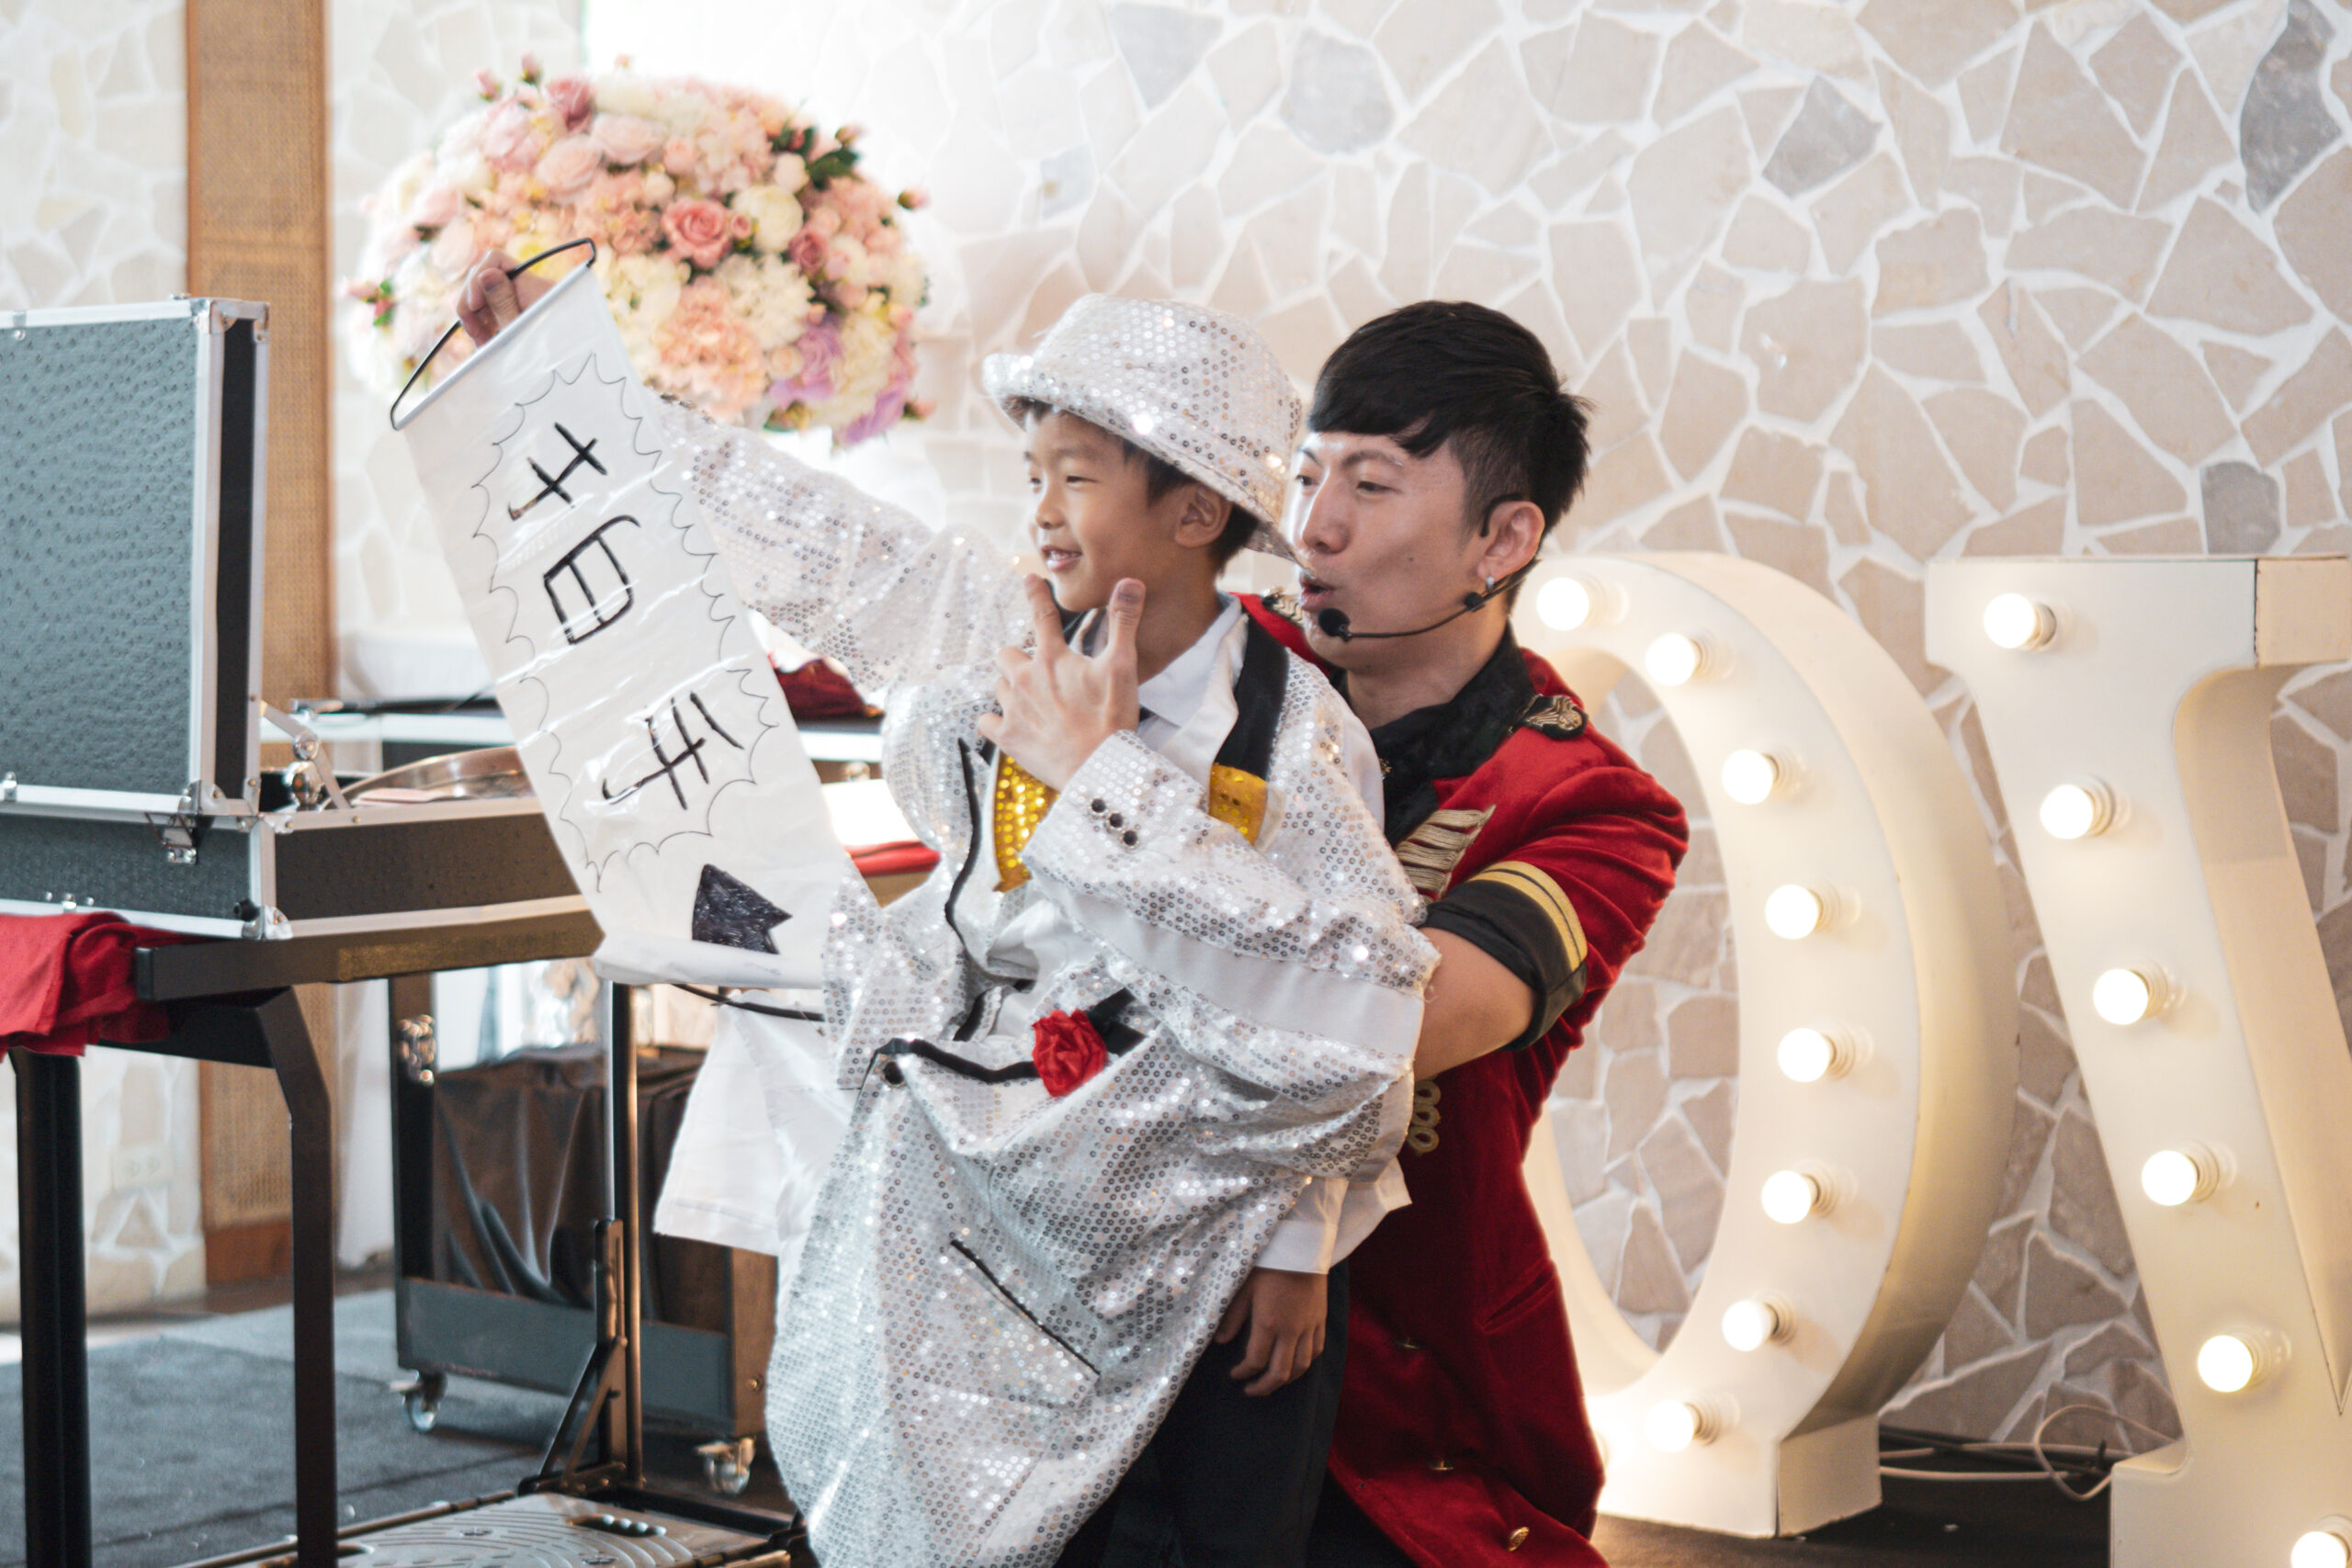 方豪&雅棠婚宴魔術表演、變出新娘